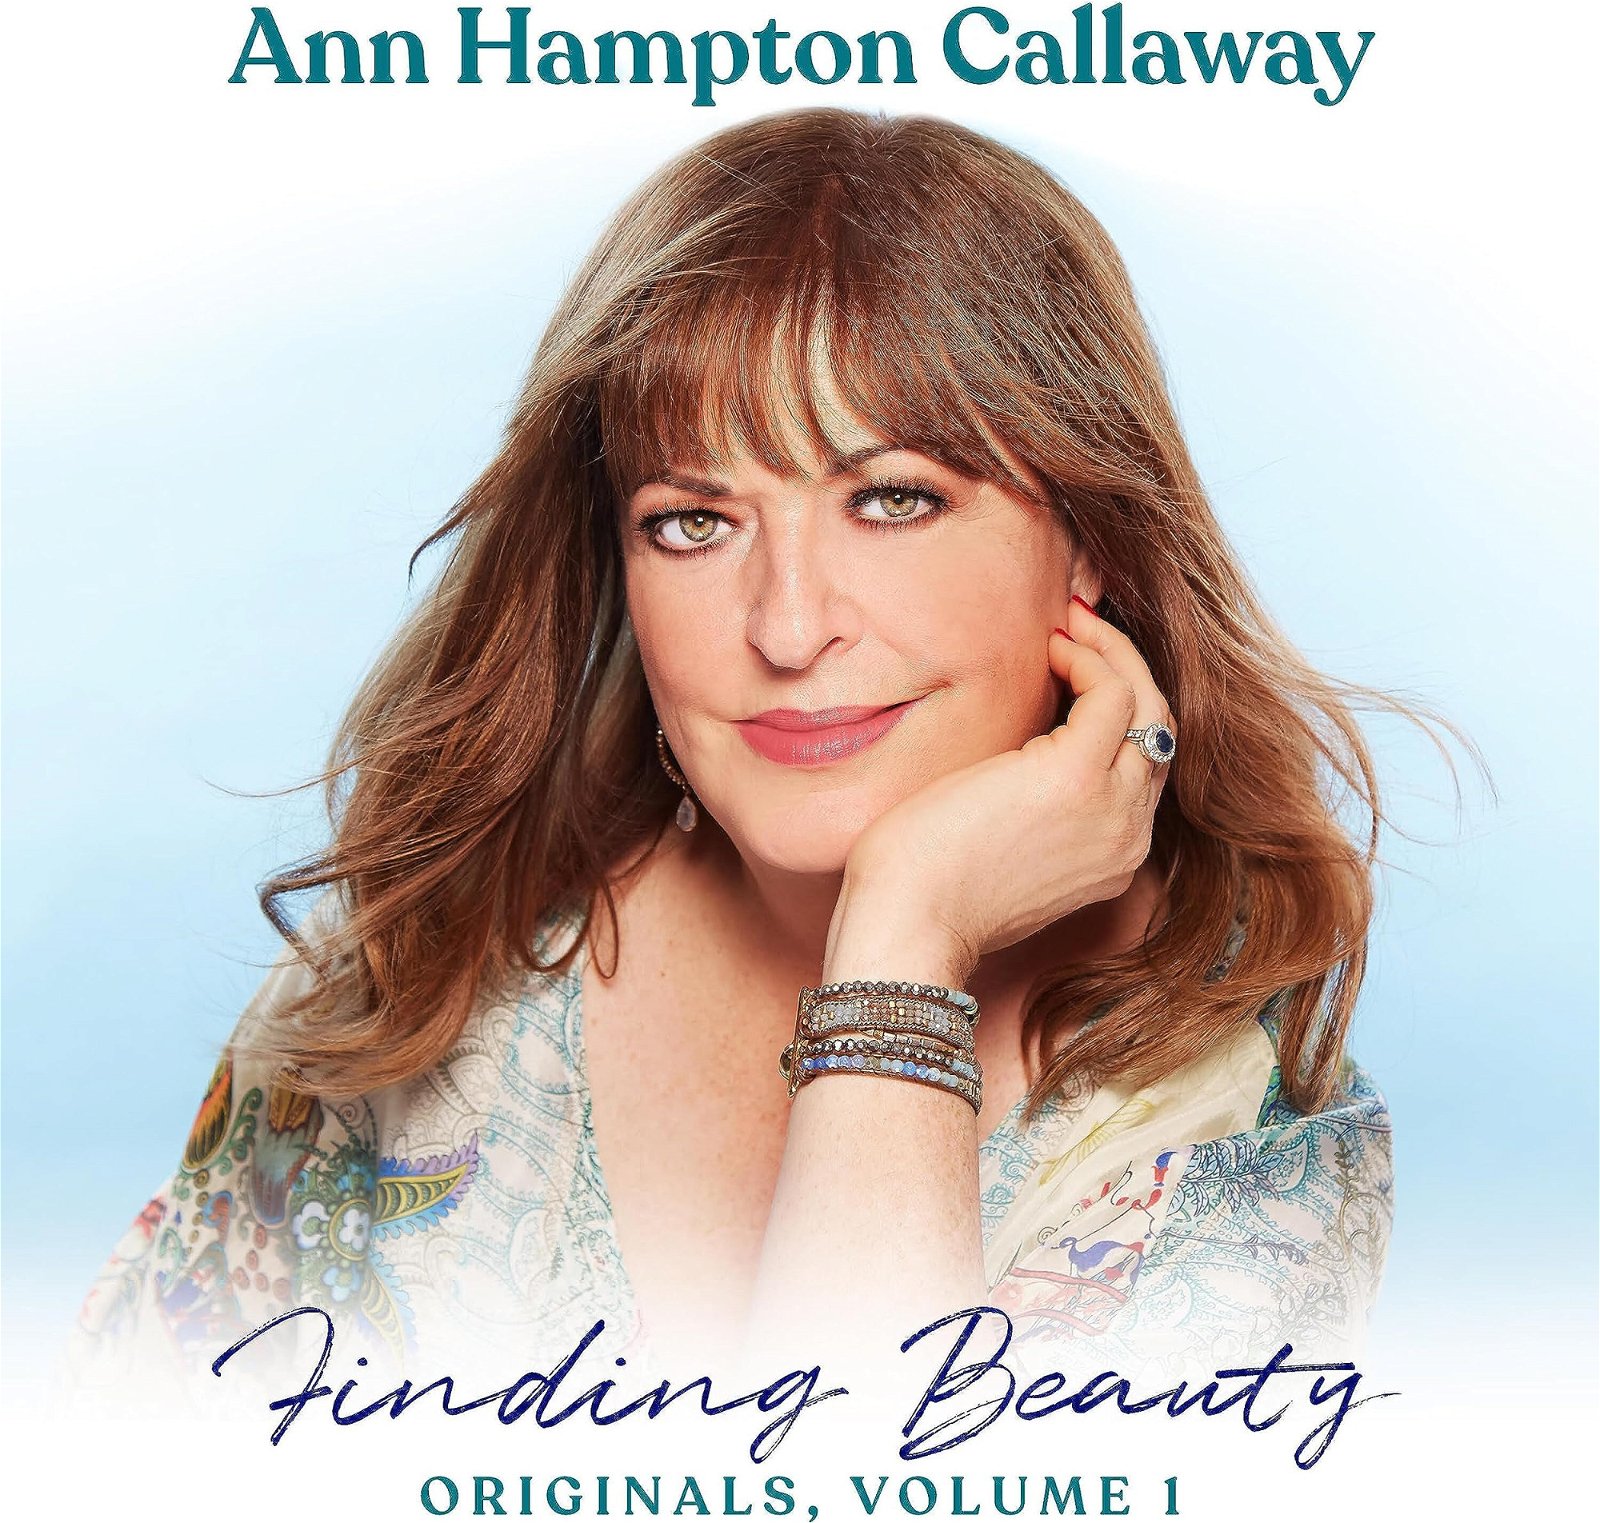 CD Shop - CALLAWAY, ANN HAMPTON FINDING BEAUTY, ORIGINALS VOL.1